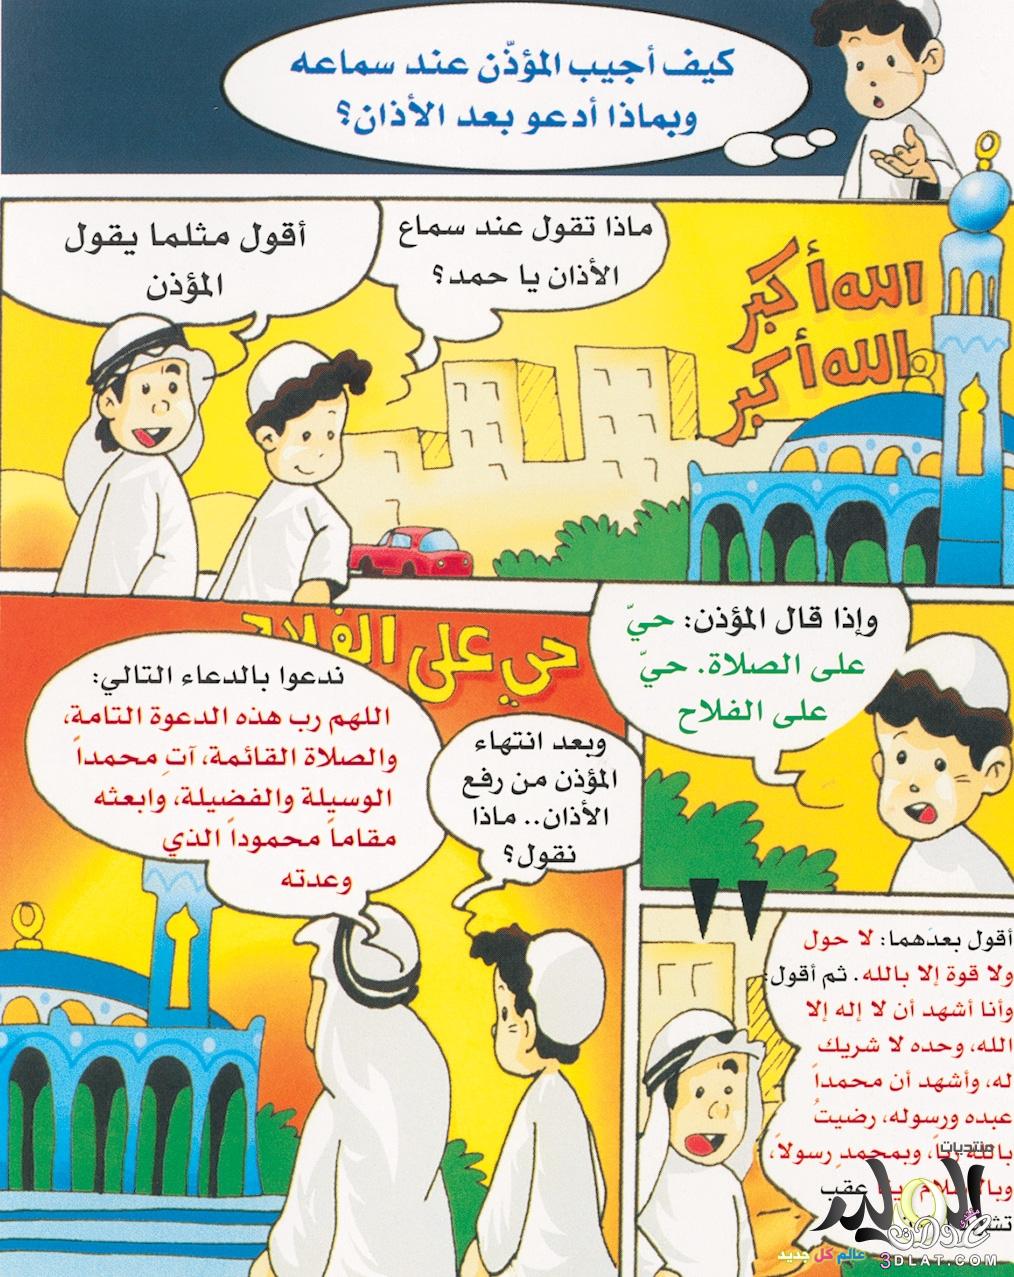 حكايات دينية مصورة للصغار,قصص  اطفال  دينية  بالصور  ,  قصص  اطفال  اسلامية  مصورة